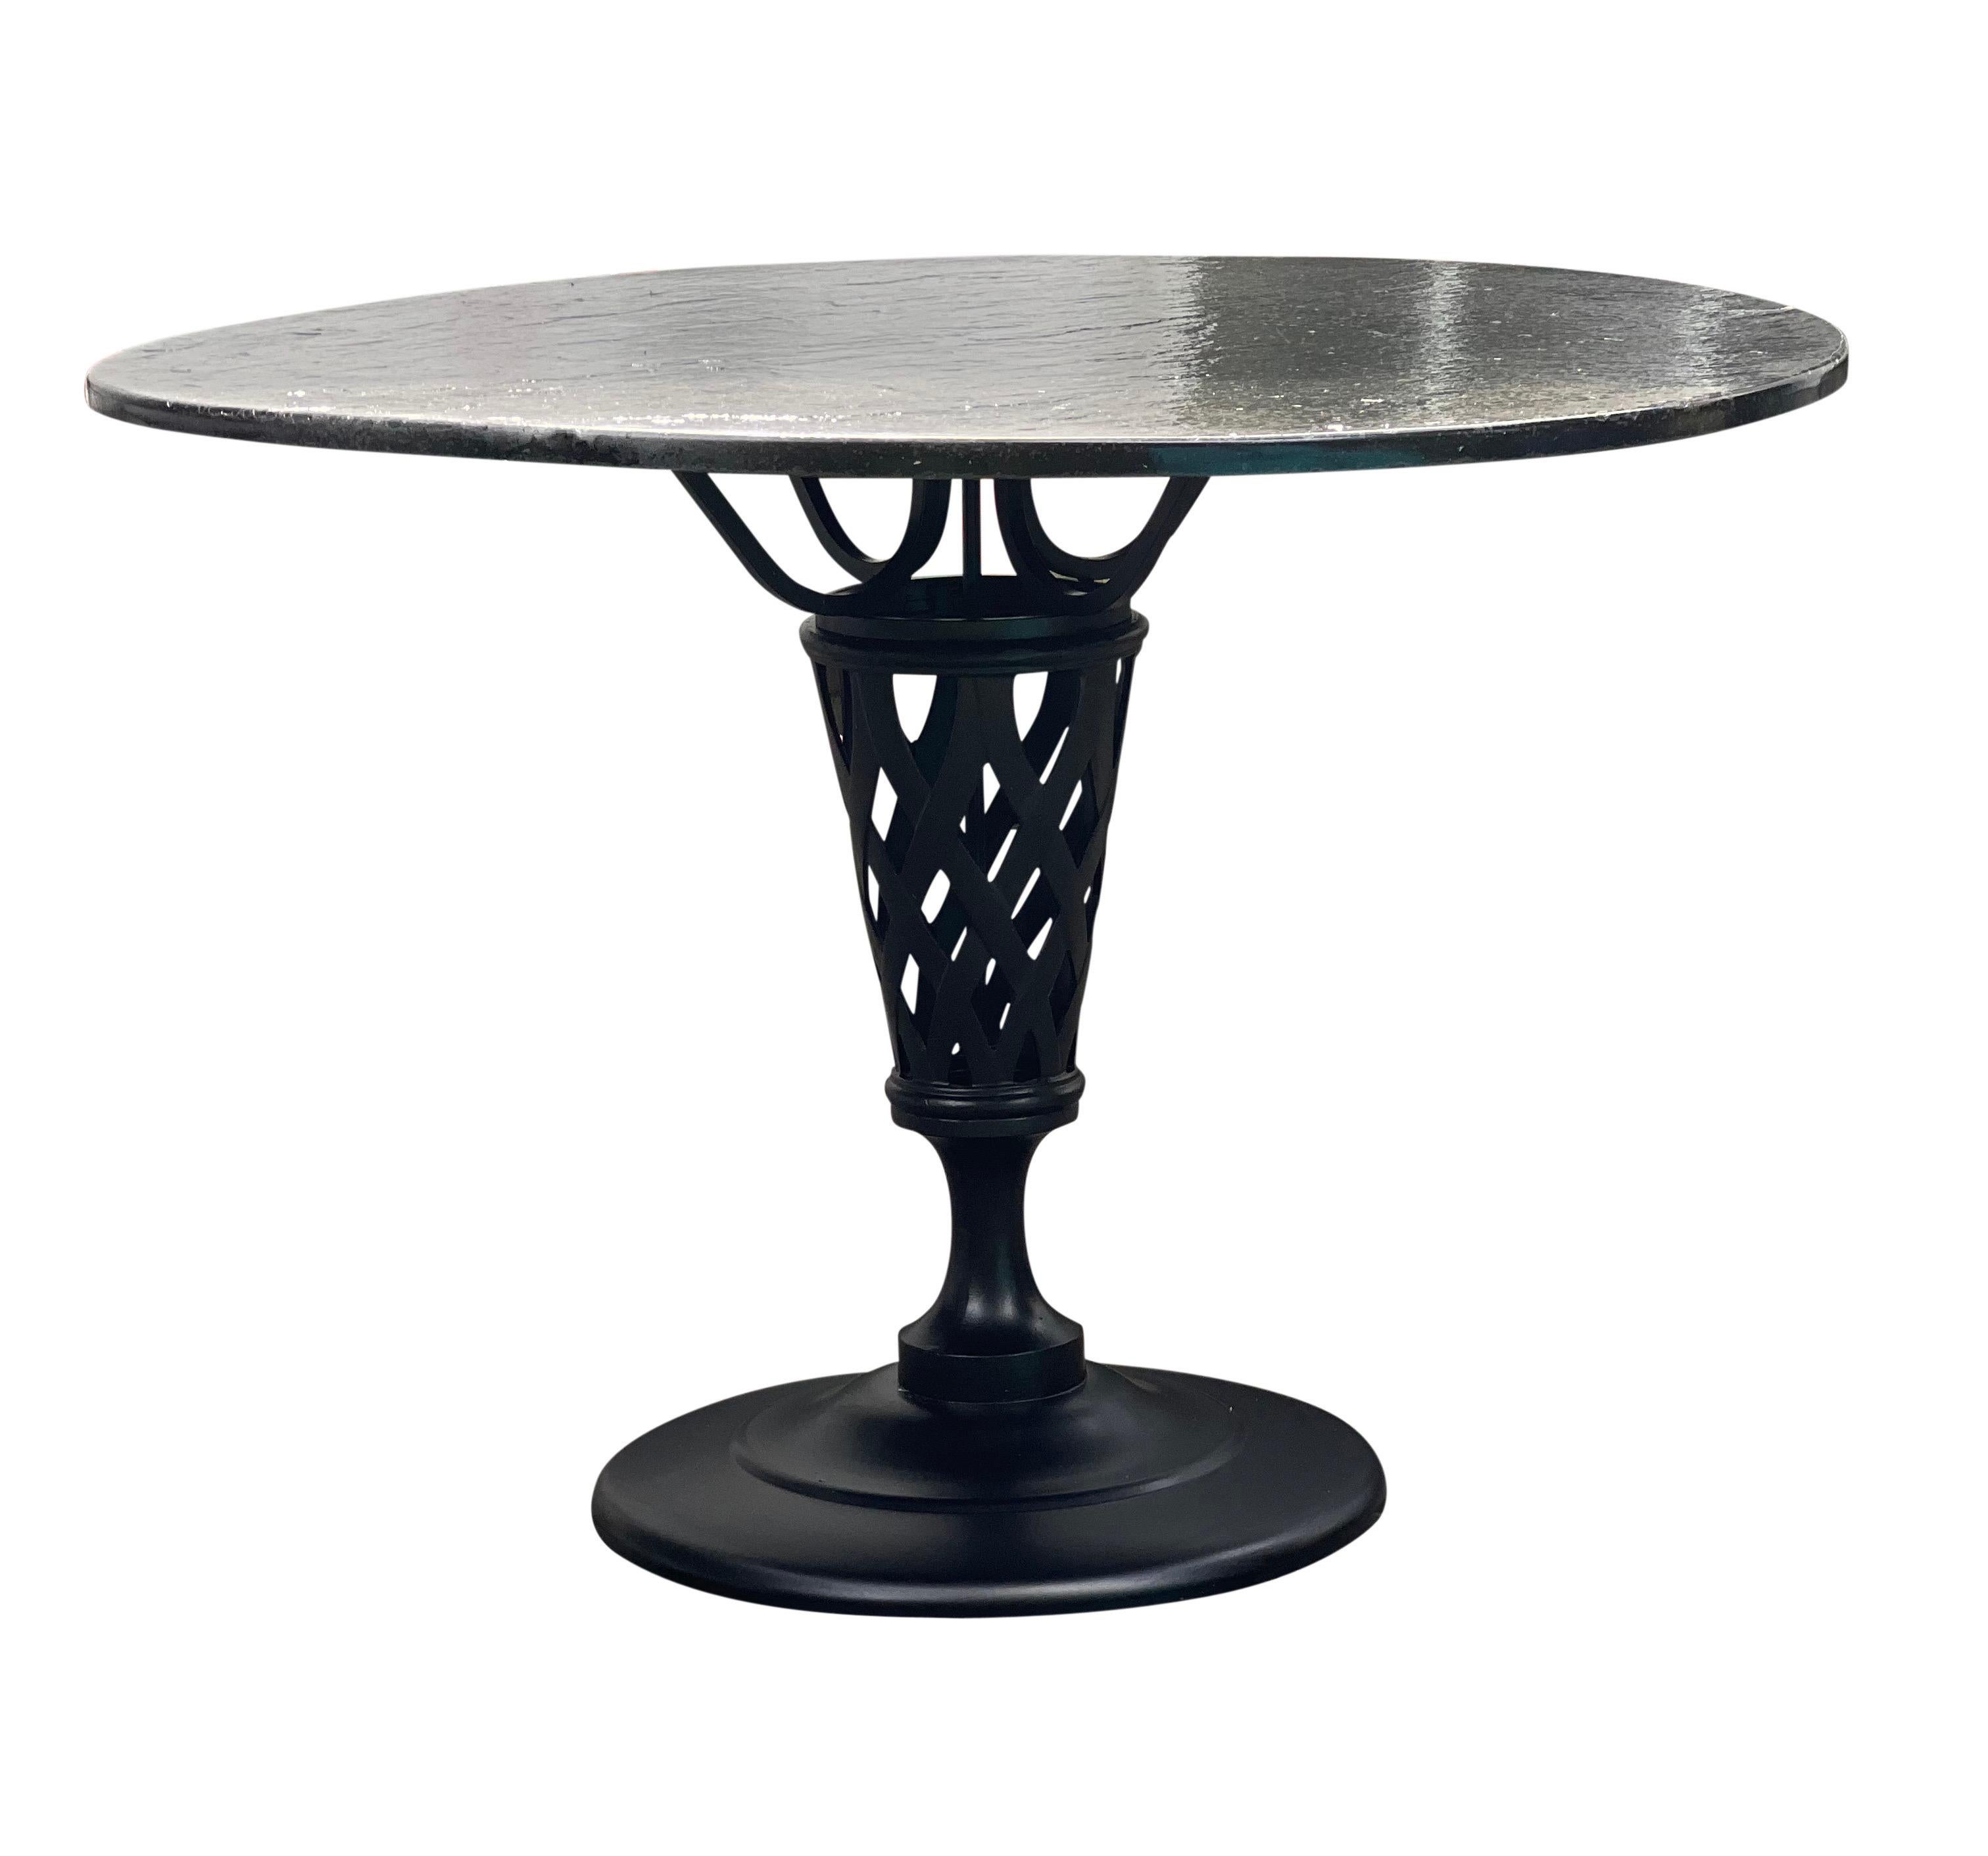 Fabelhafte Vintage-Gussaluminium-Essgarnitur für drinnen und draußen, neu gepolstert, professionell sandgestrahlt und pulverbeschichtet in mattem Schwarz mit einer strukturierten schwarzen Schiefer-Tischplatte.

Dieser einzigartige Tisch hat einen